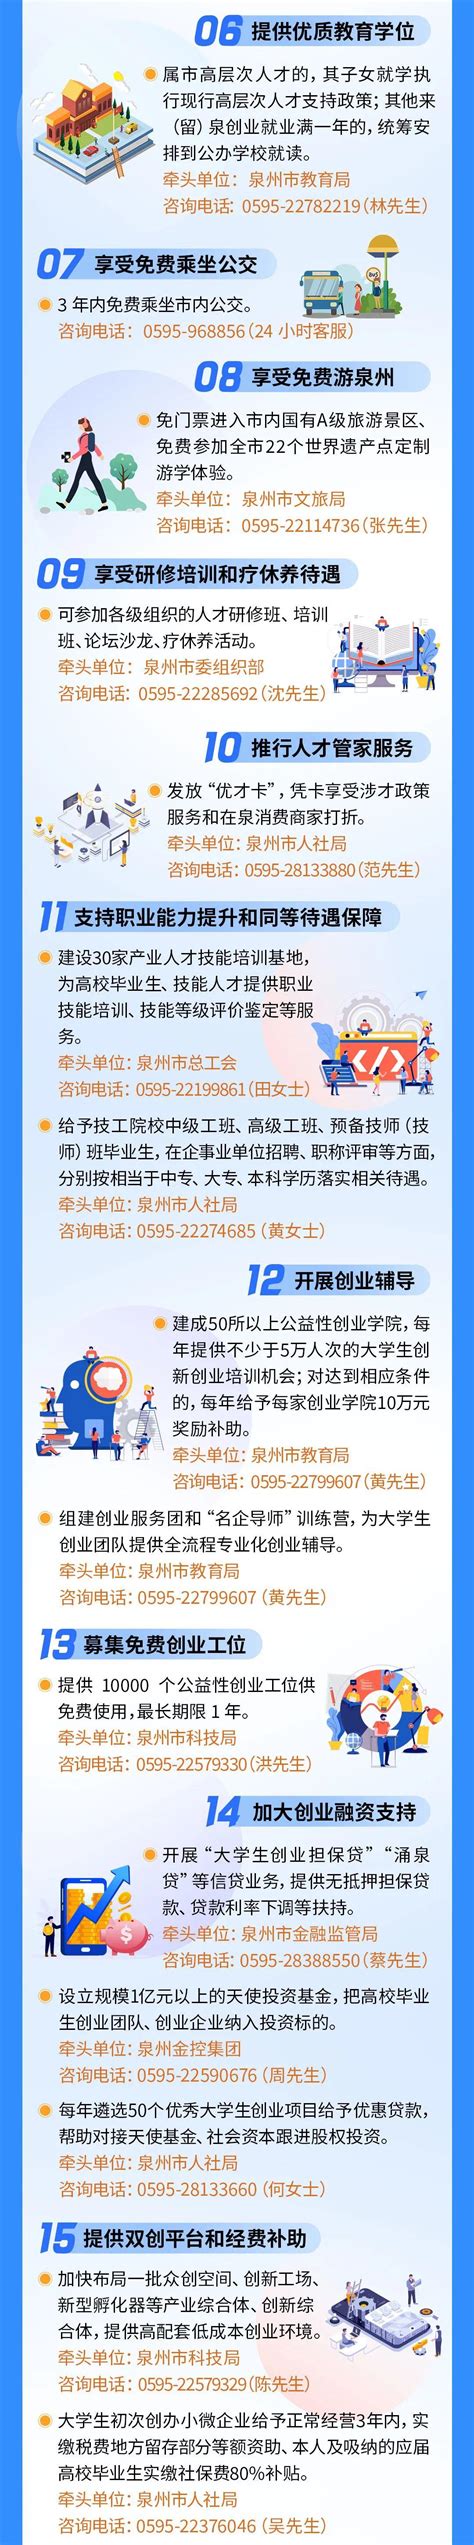 2017中国卡通形象营销大会泉州峰会召开